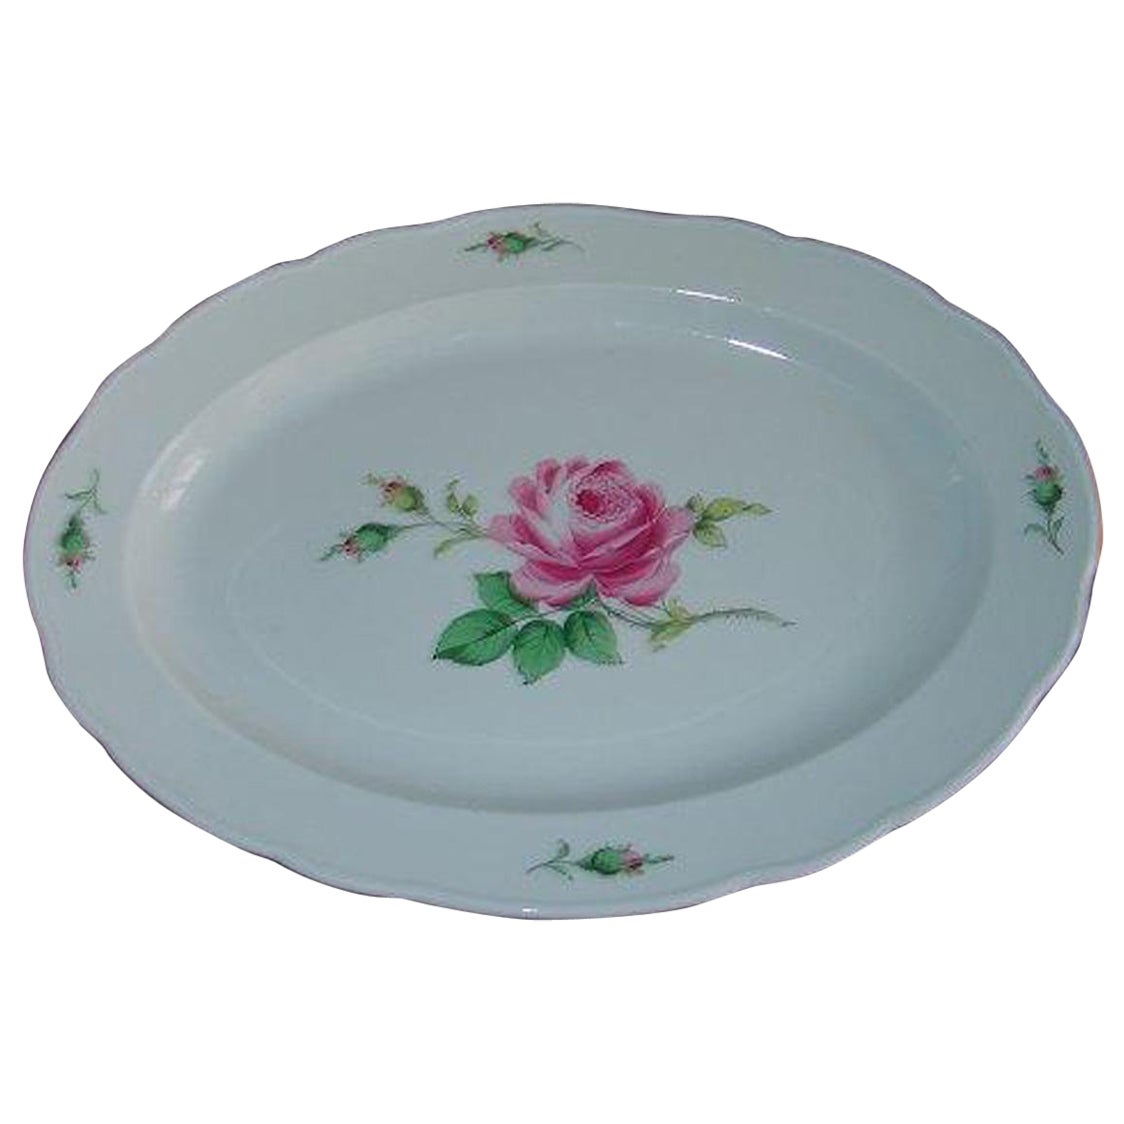 Meissen Porcelain Large Oval Platter with Rose Design For Sale